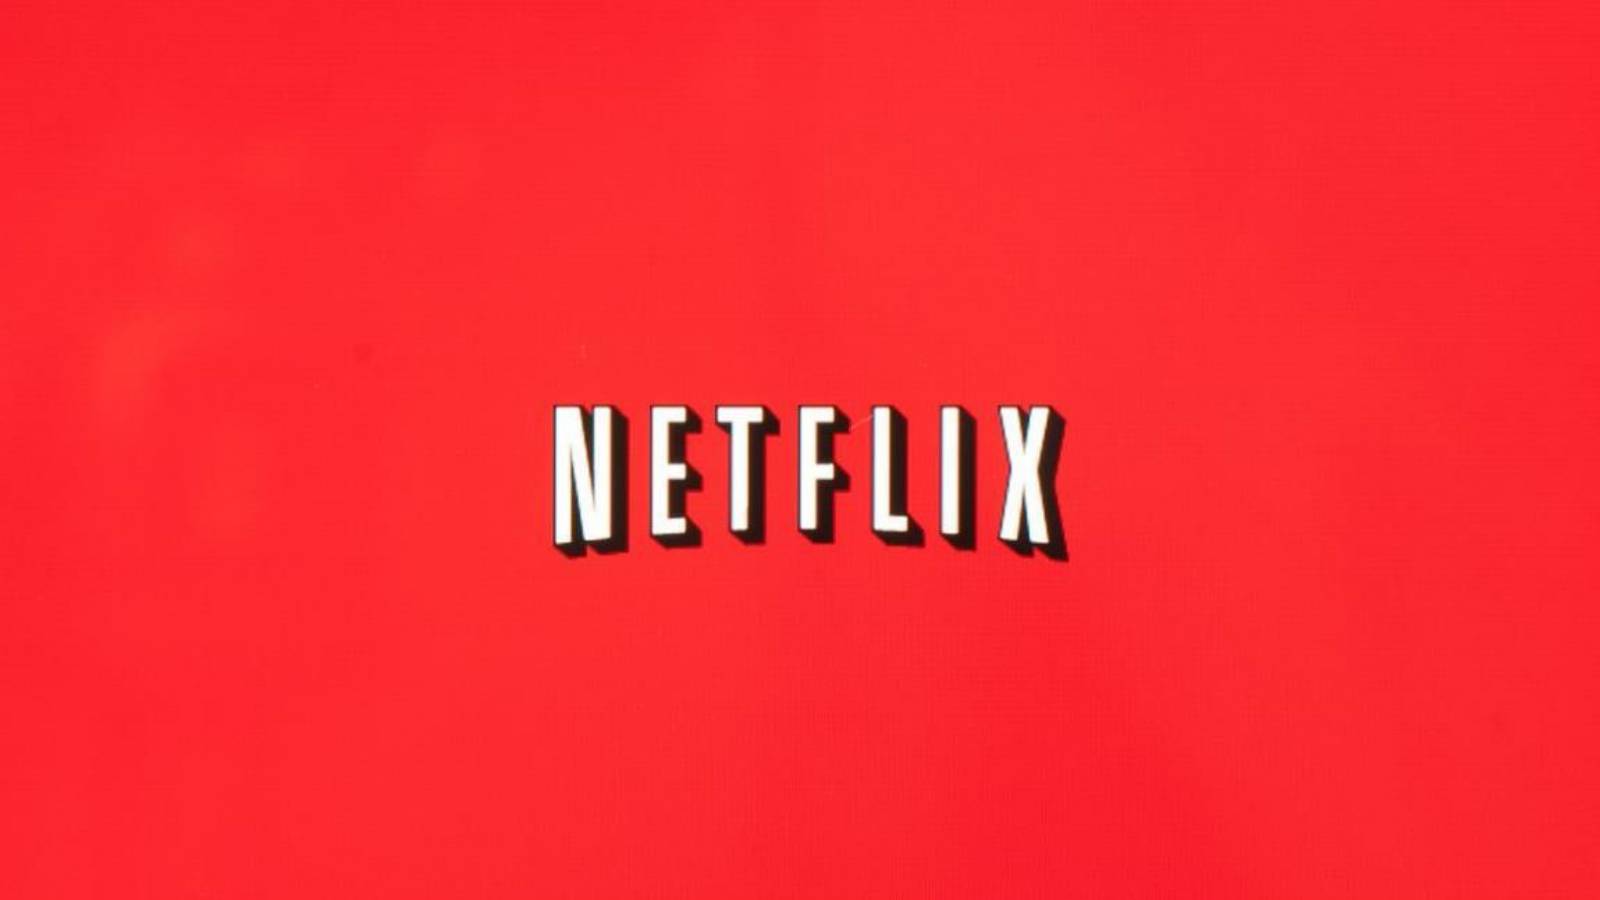 Le royaume de Netflix